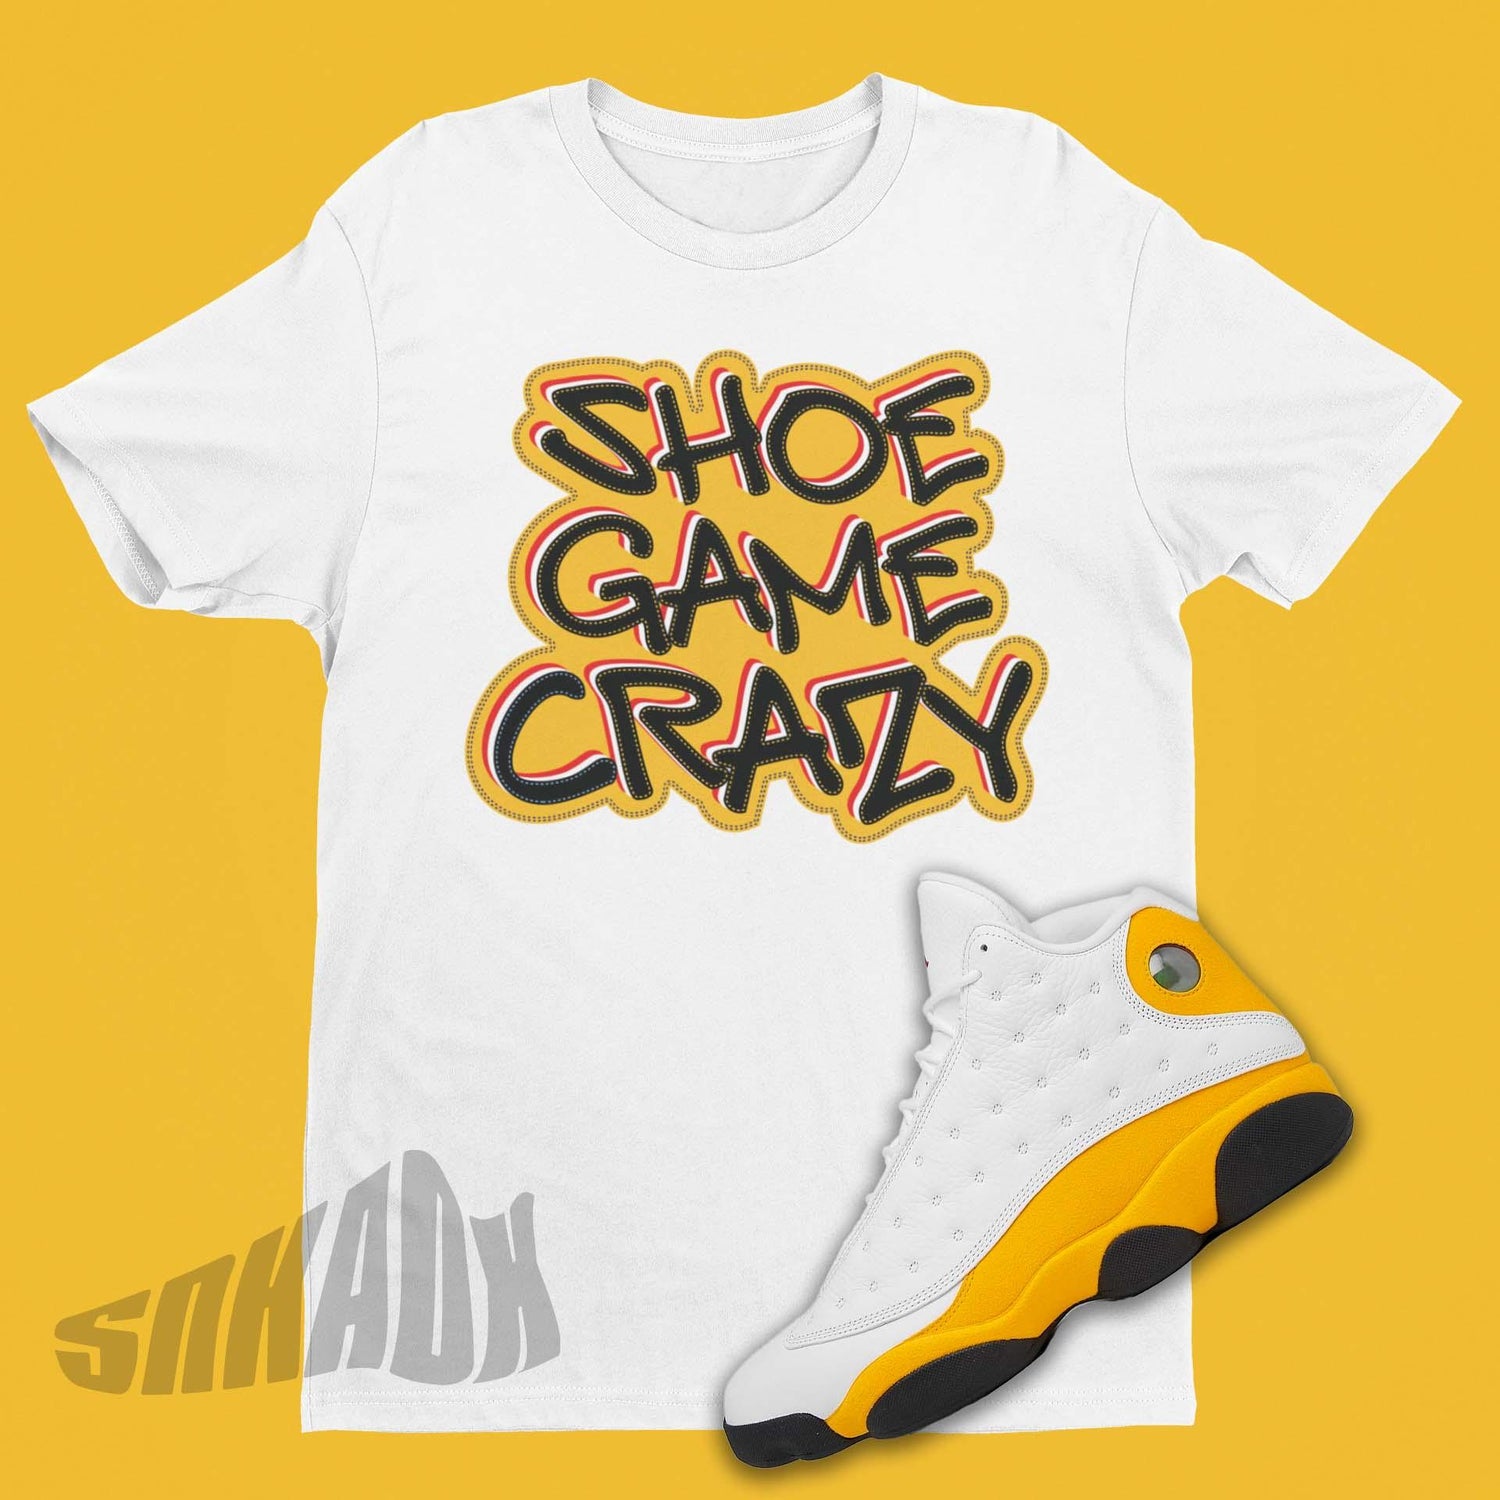 Shoe Game Crazy Shirt to Match Air Jordan 13 Del Sol - SNKADX